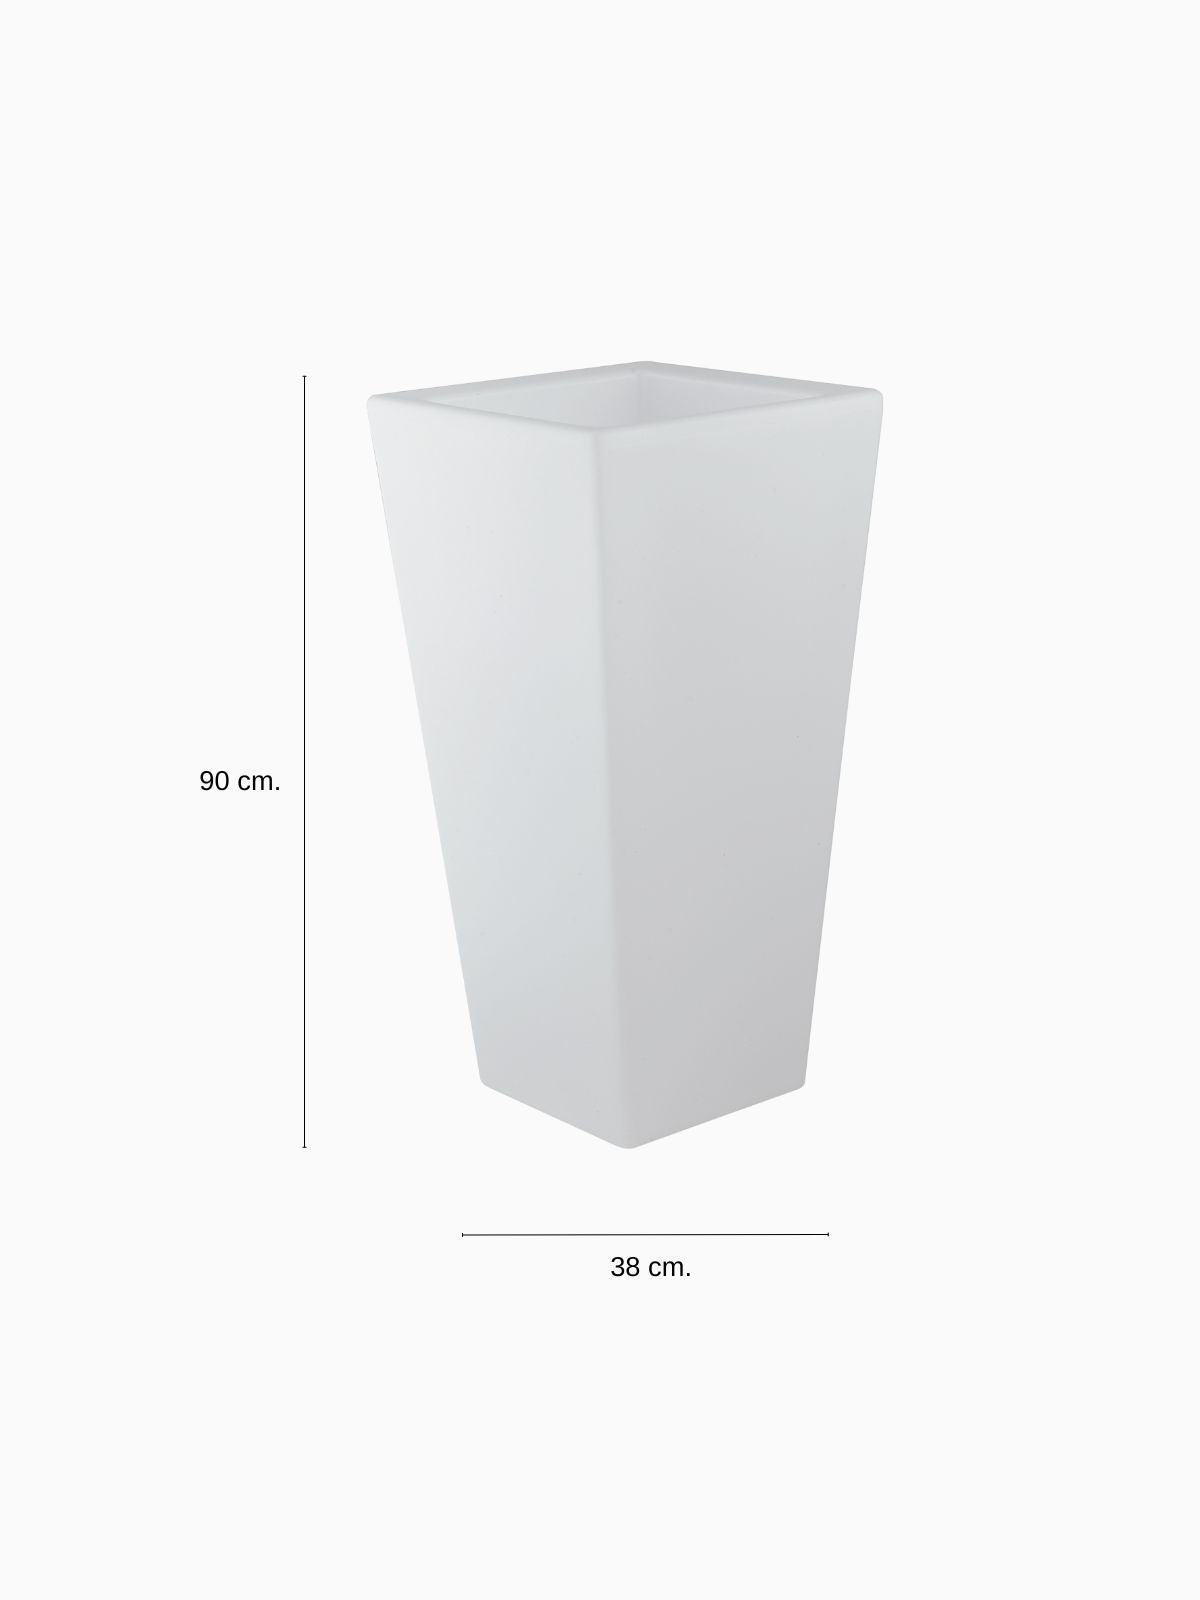 Vaso da esterno quadrato a LED Geco in polietilene, colore bianco 90 cm.-4